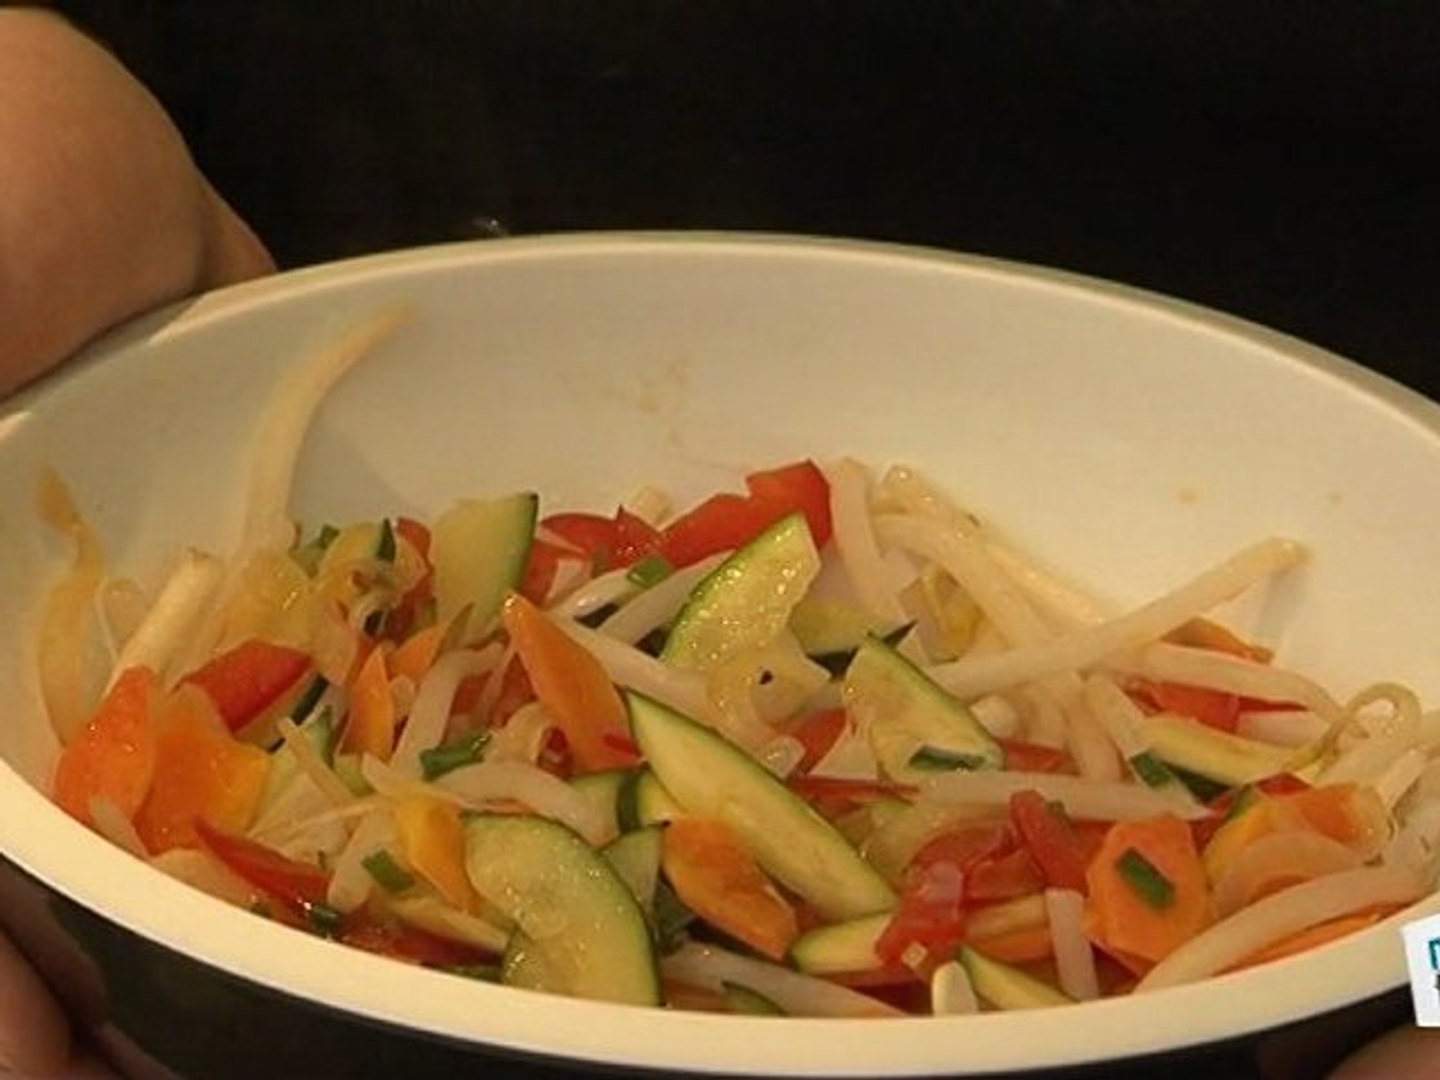 Cuisine : Recette inratable de wok de légumes - Vidéo Dailymotion